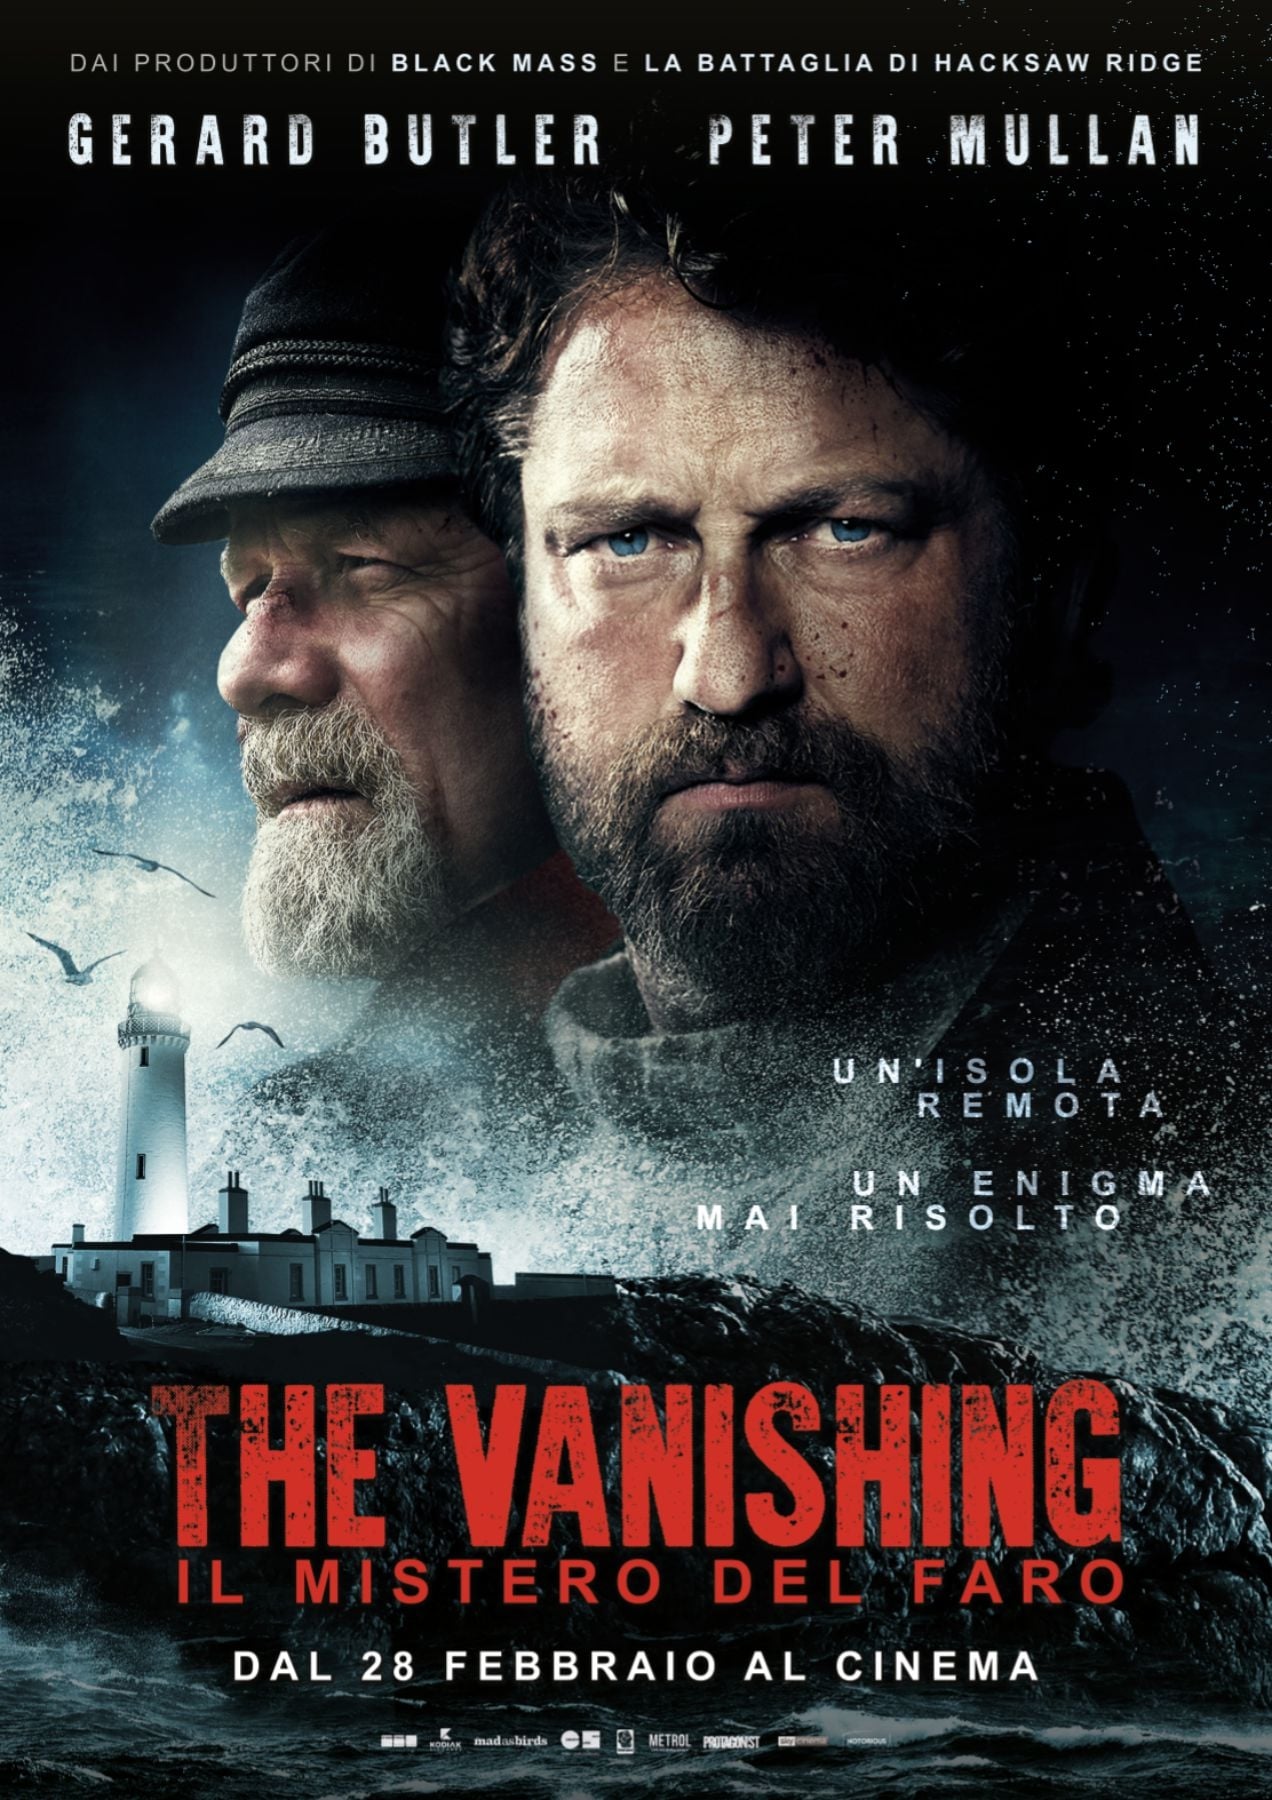 The Vanishing - Il mistero del faro film